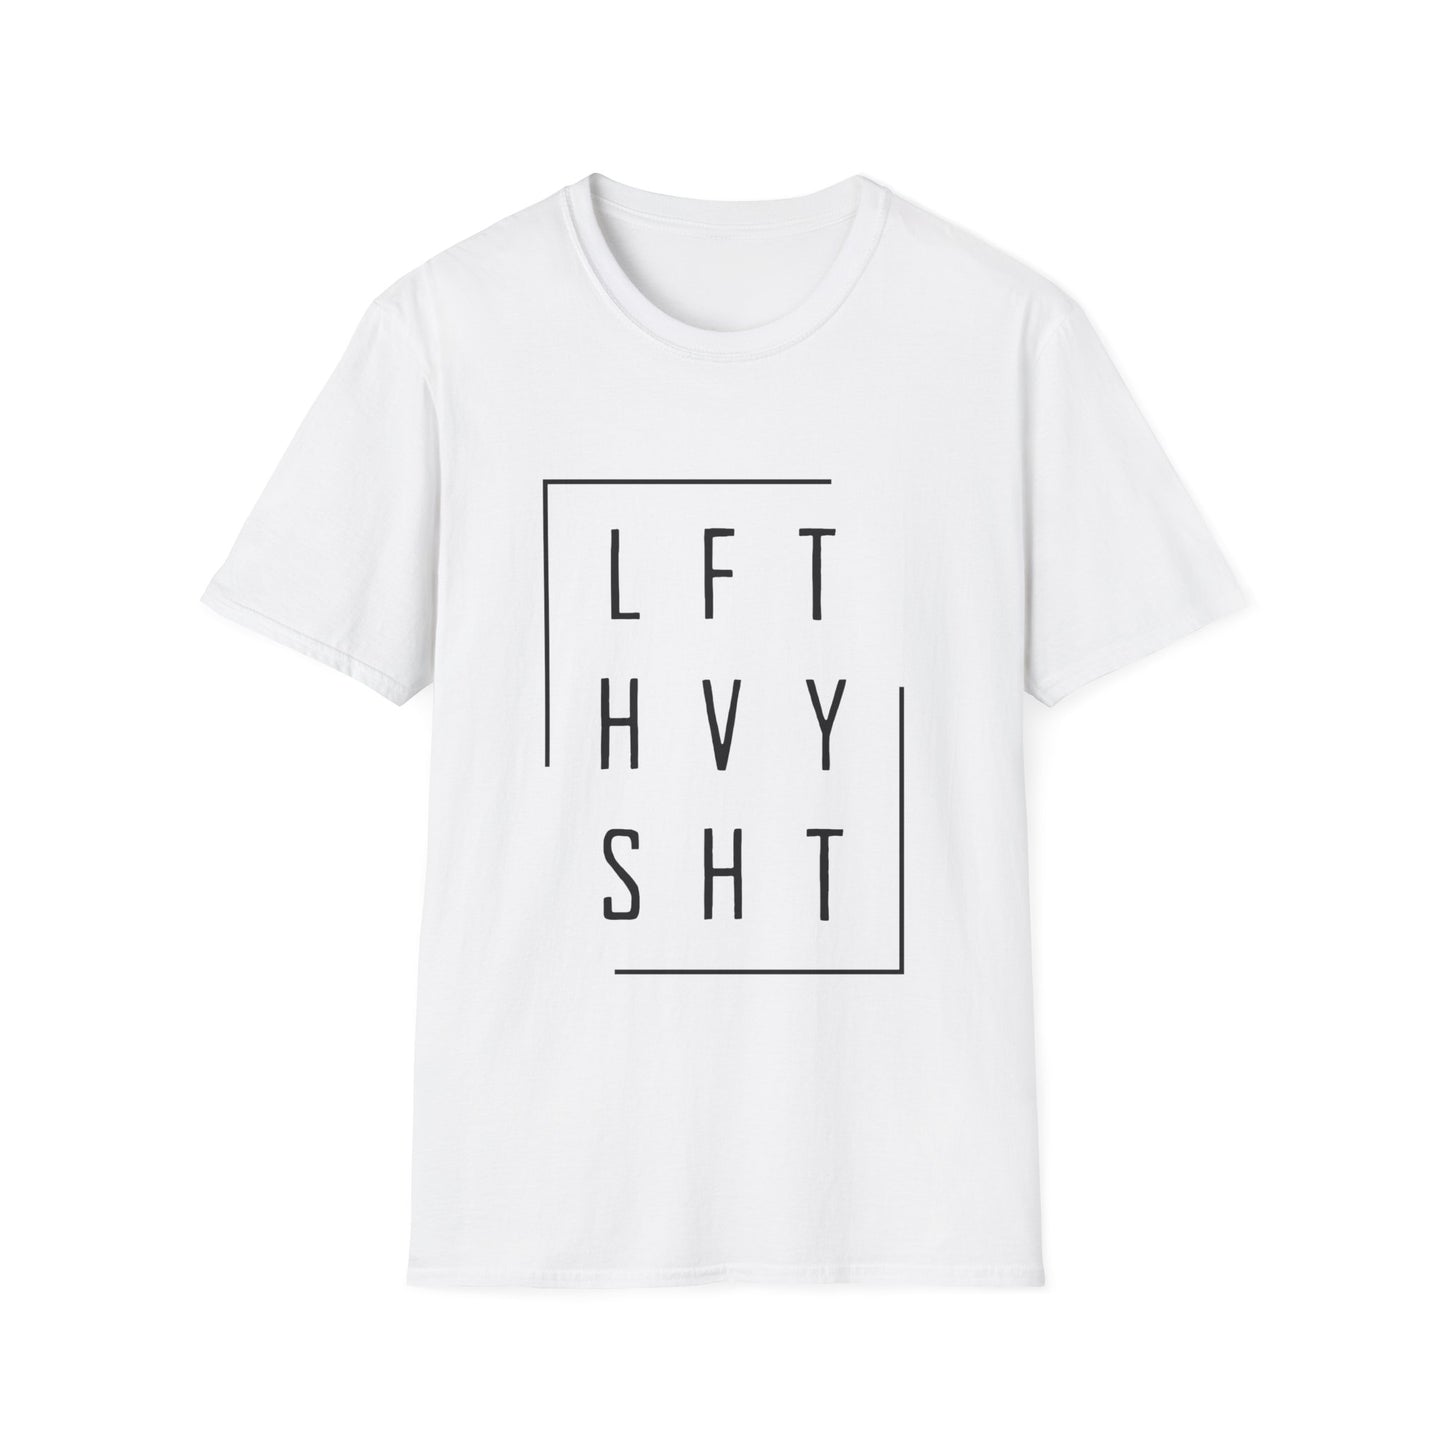 Workout T-shirt (LFT HVY SHT)